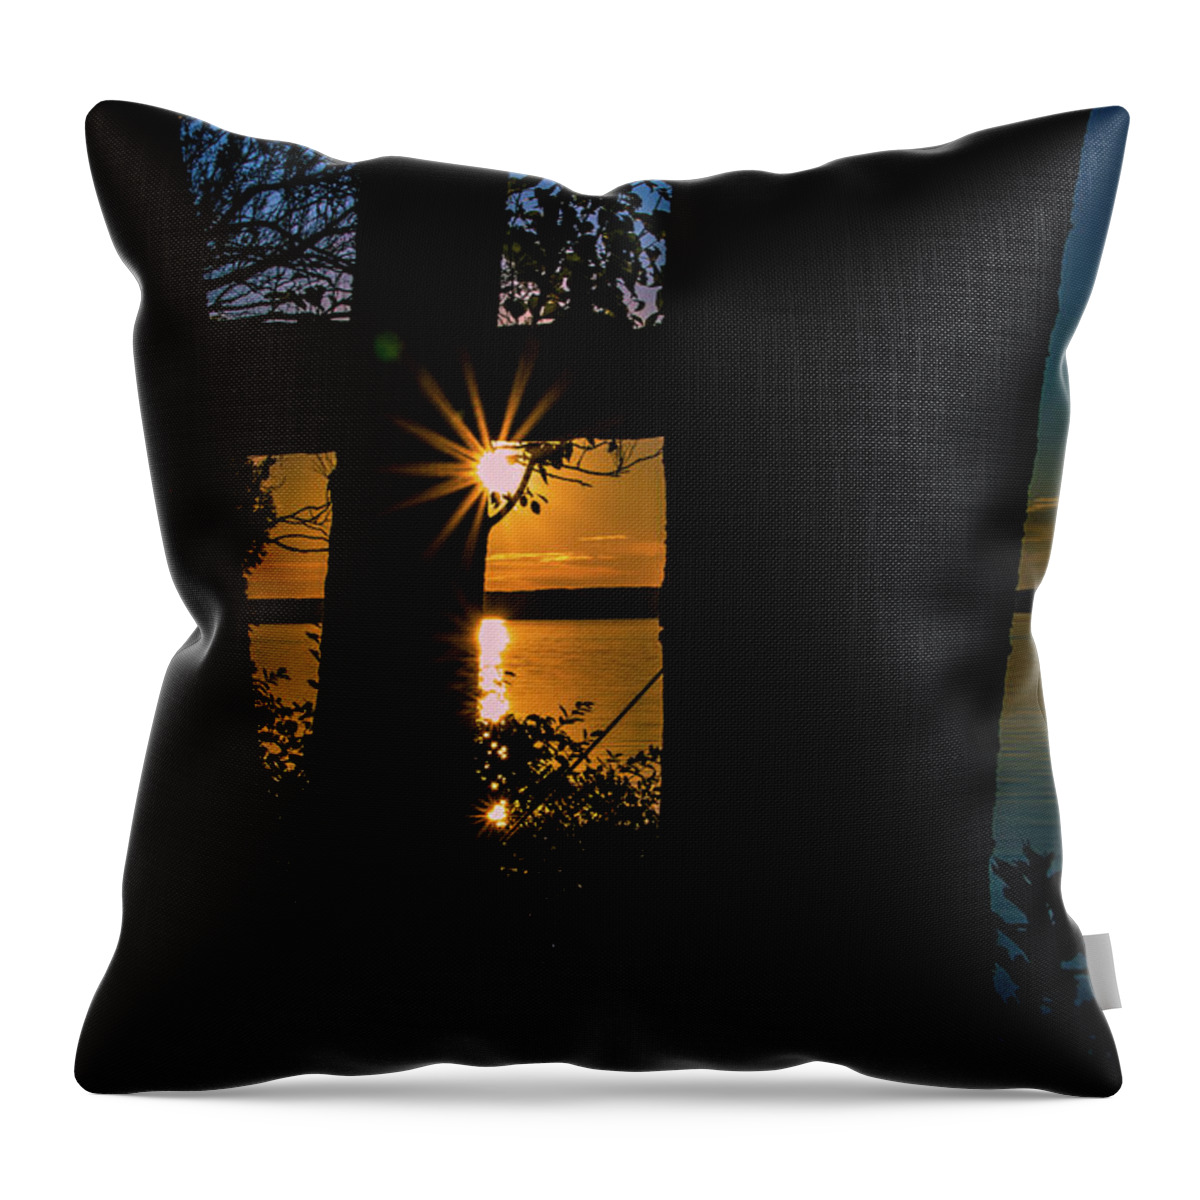 Sunset Throw Pillow featuring the photograph A Blissful Evening by Deborah Klubertanz